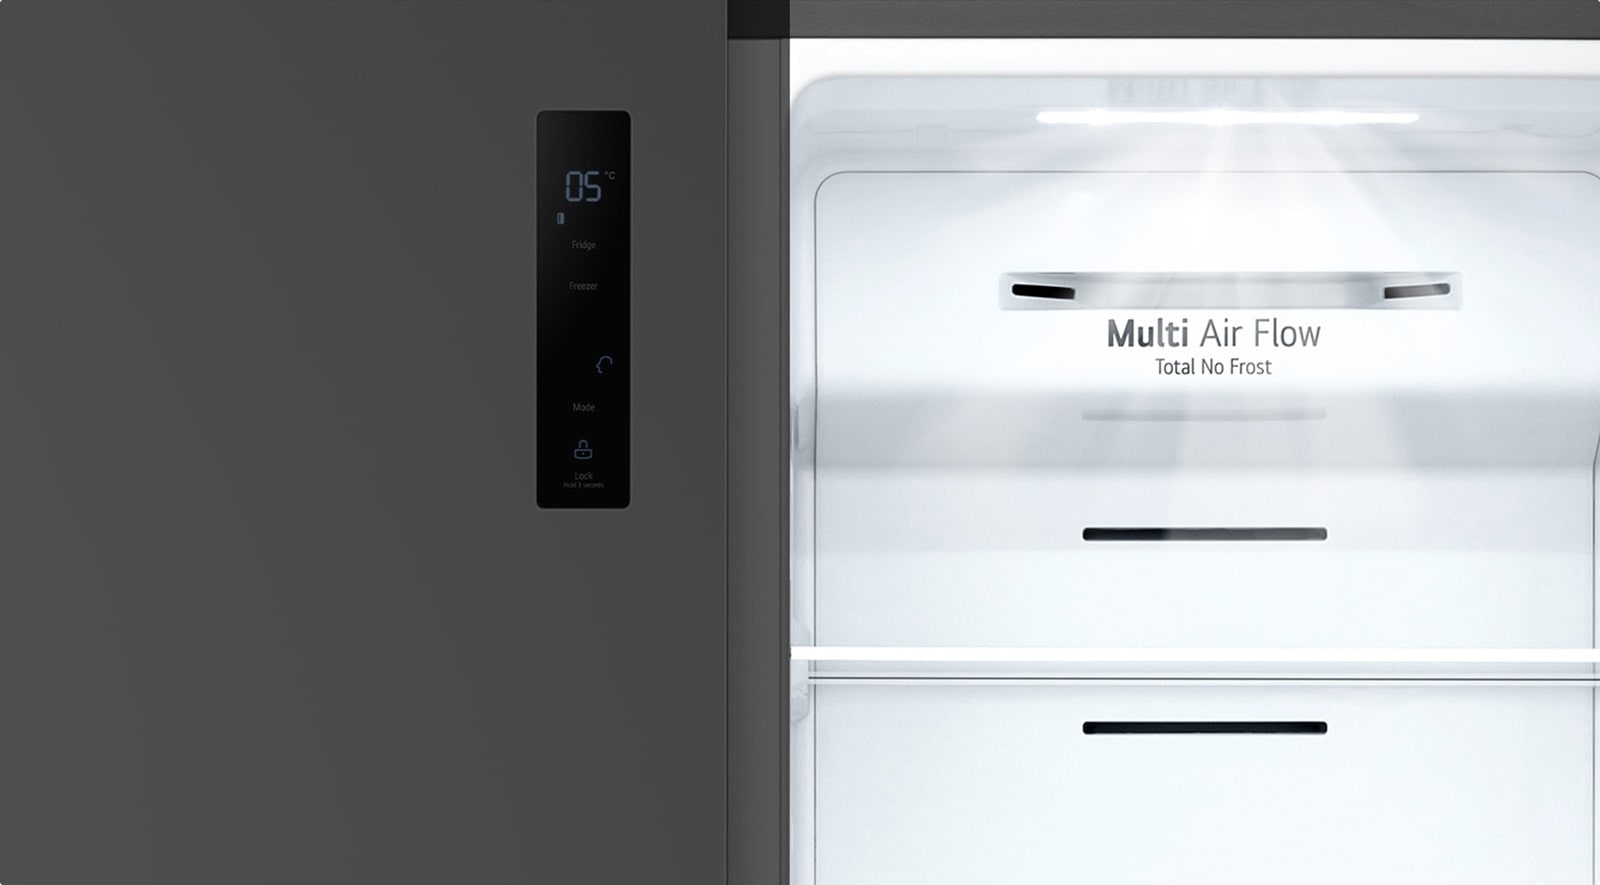 Une lumière blanche brille à l’intérieur du réfrigérateur.